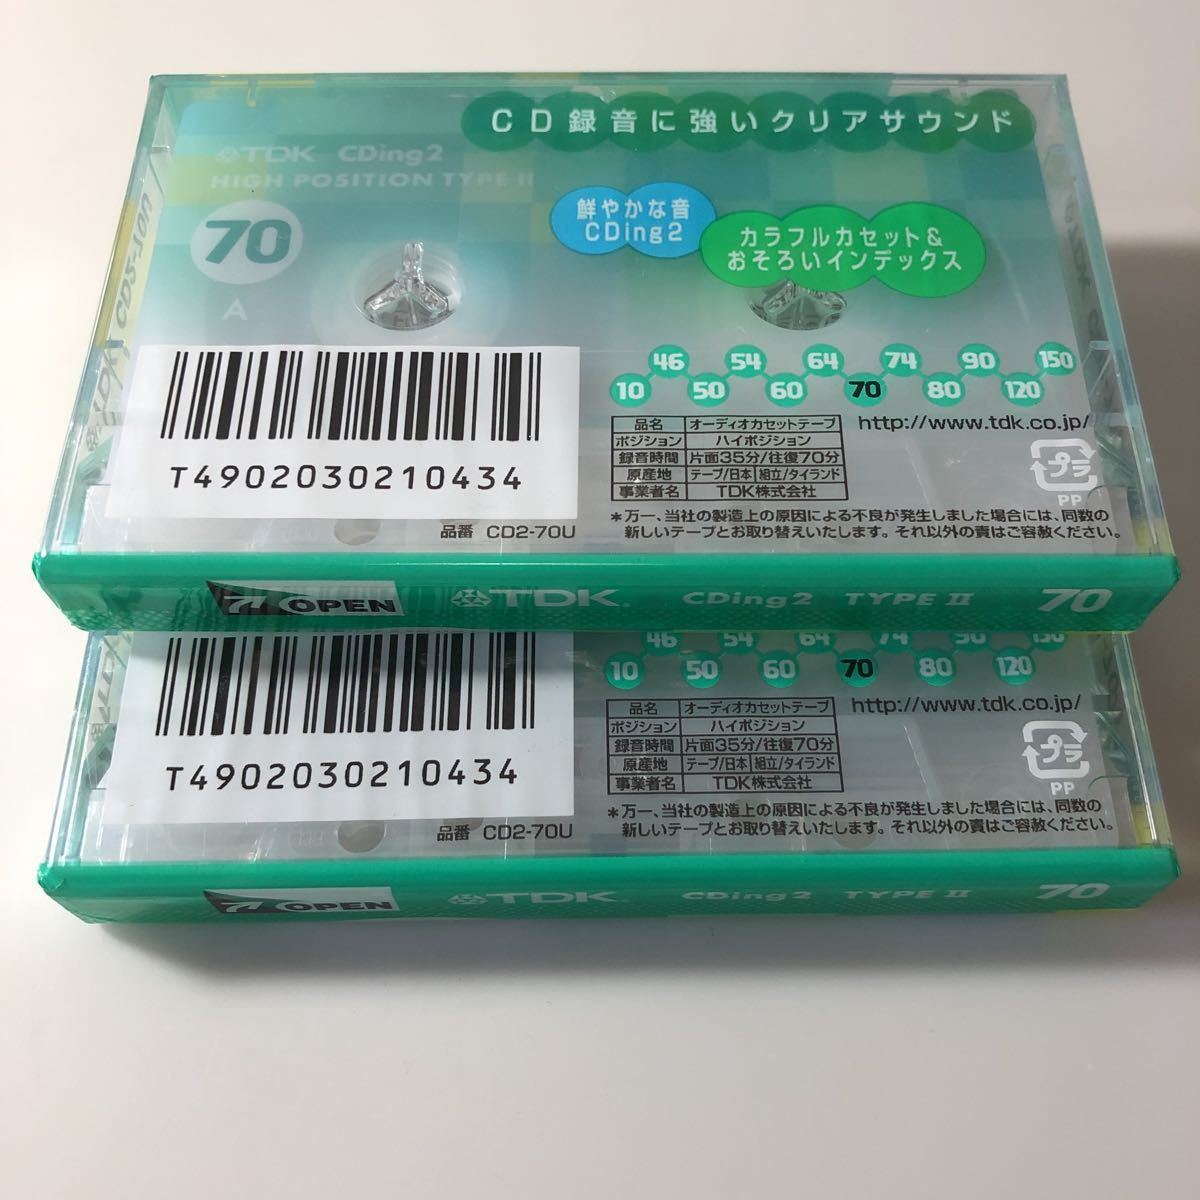 カセットテープ ハイポジション TDK CDing2 70分 2本① product details | Yahoo! Auctions Japan  proxy bidding and shopping service | FROM JAPAN